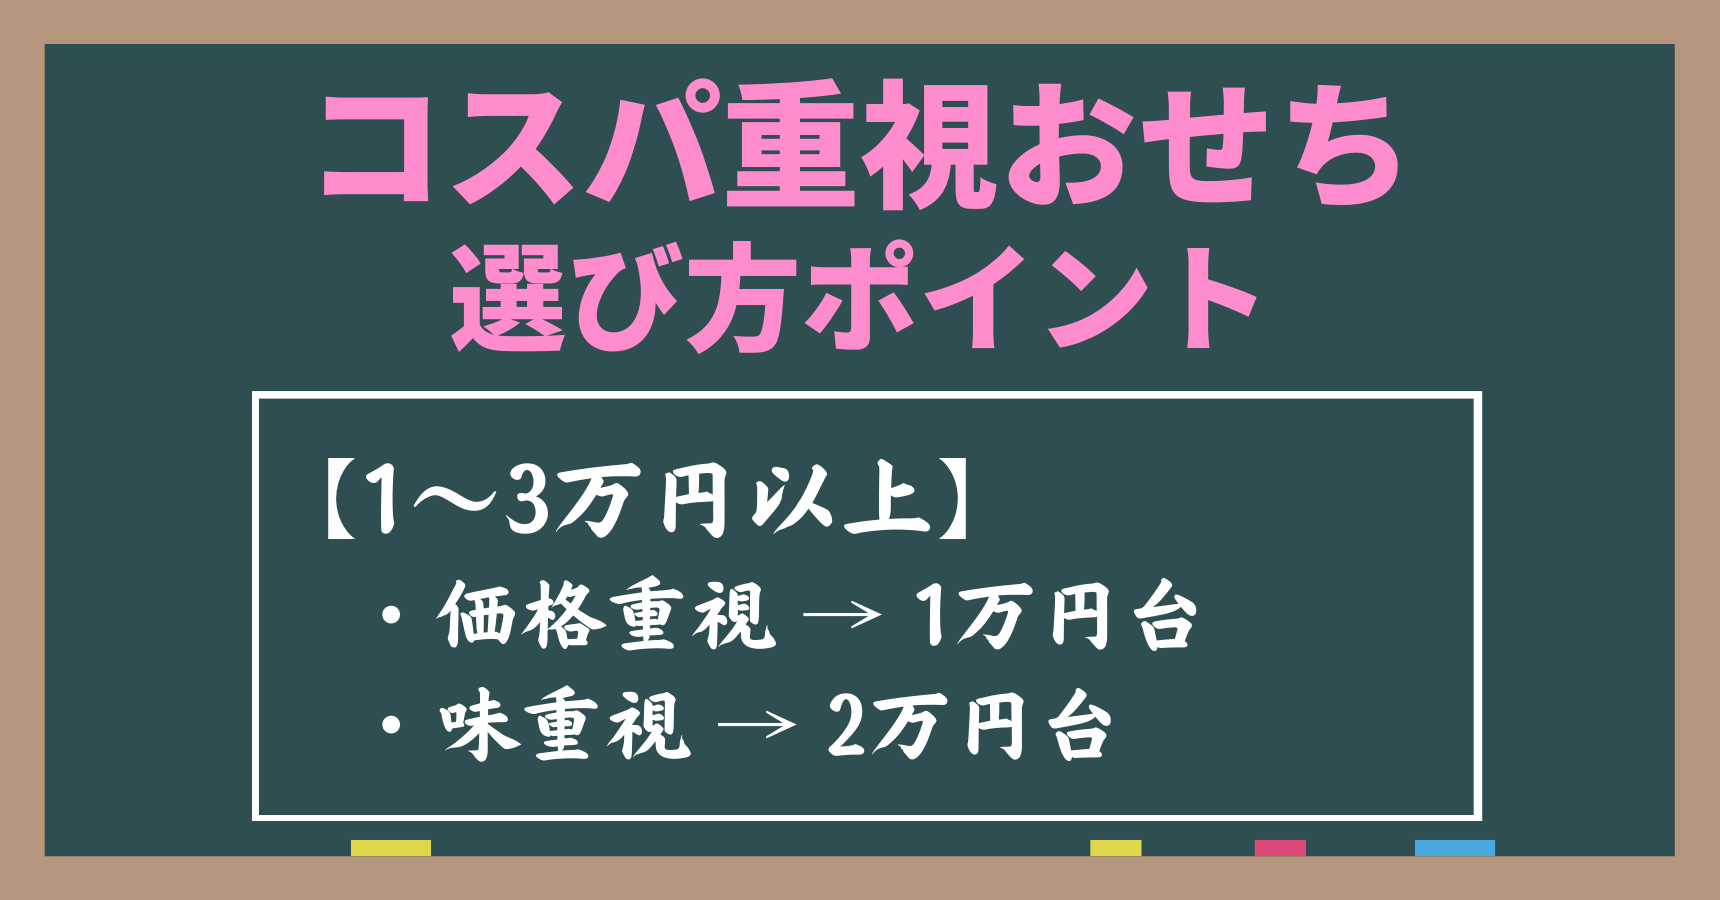 コスパ重視でおせちを選ぶポイントは「1万円以上から選ぶこと」。